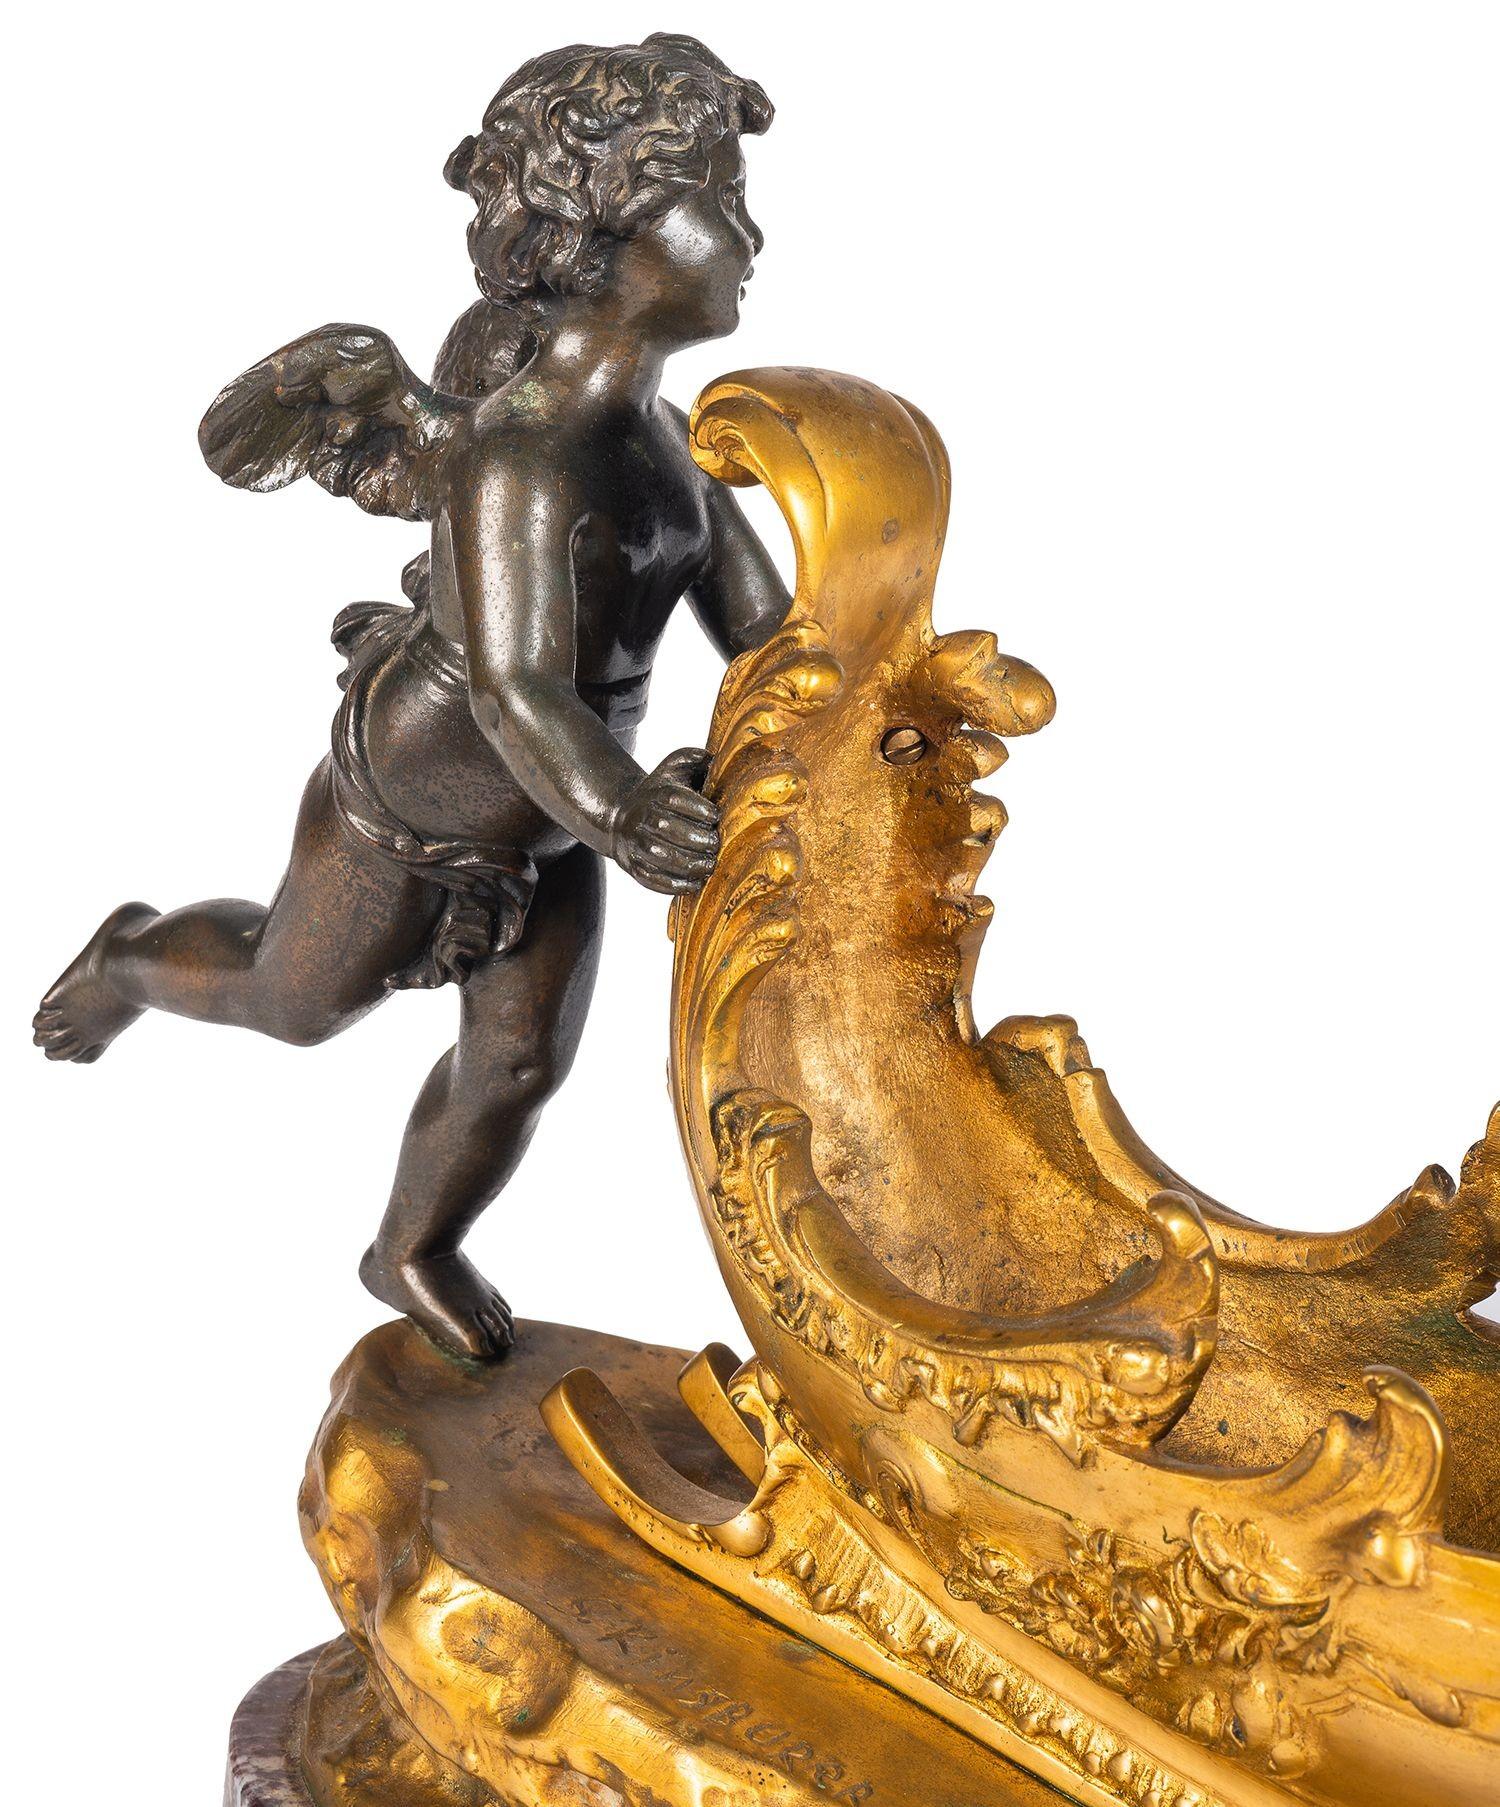 Charmant chérubin en bronze patiné et doré du XIXe siècle poussant un traîneau avec un papillon monté sur le devant, sur un socle en marbre rouge.
Signé ; S. Kinsburer.

Lot 74 G9941/23 SNYZ